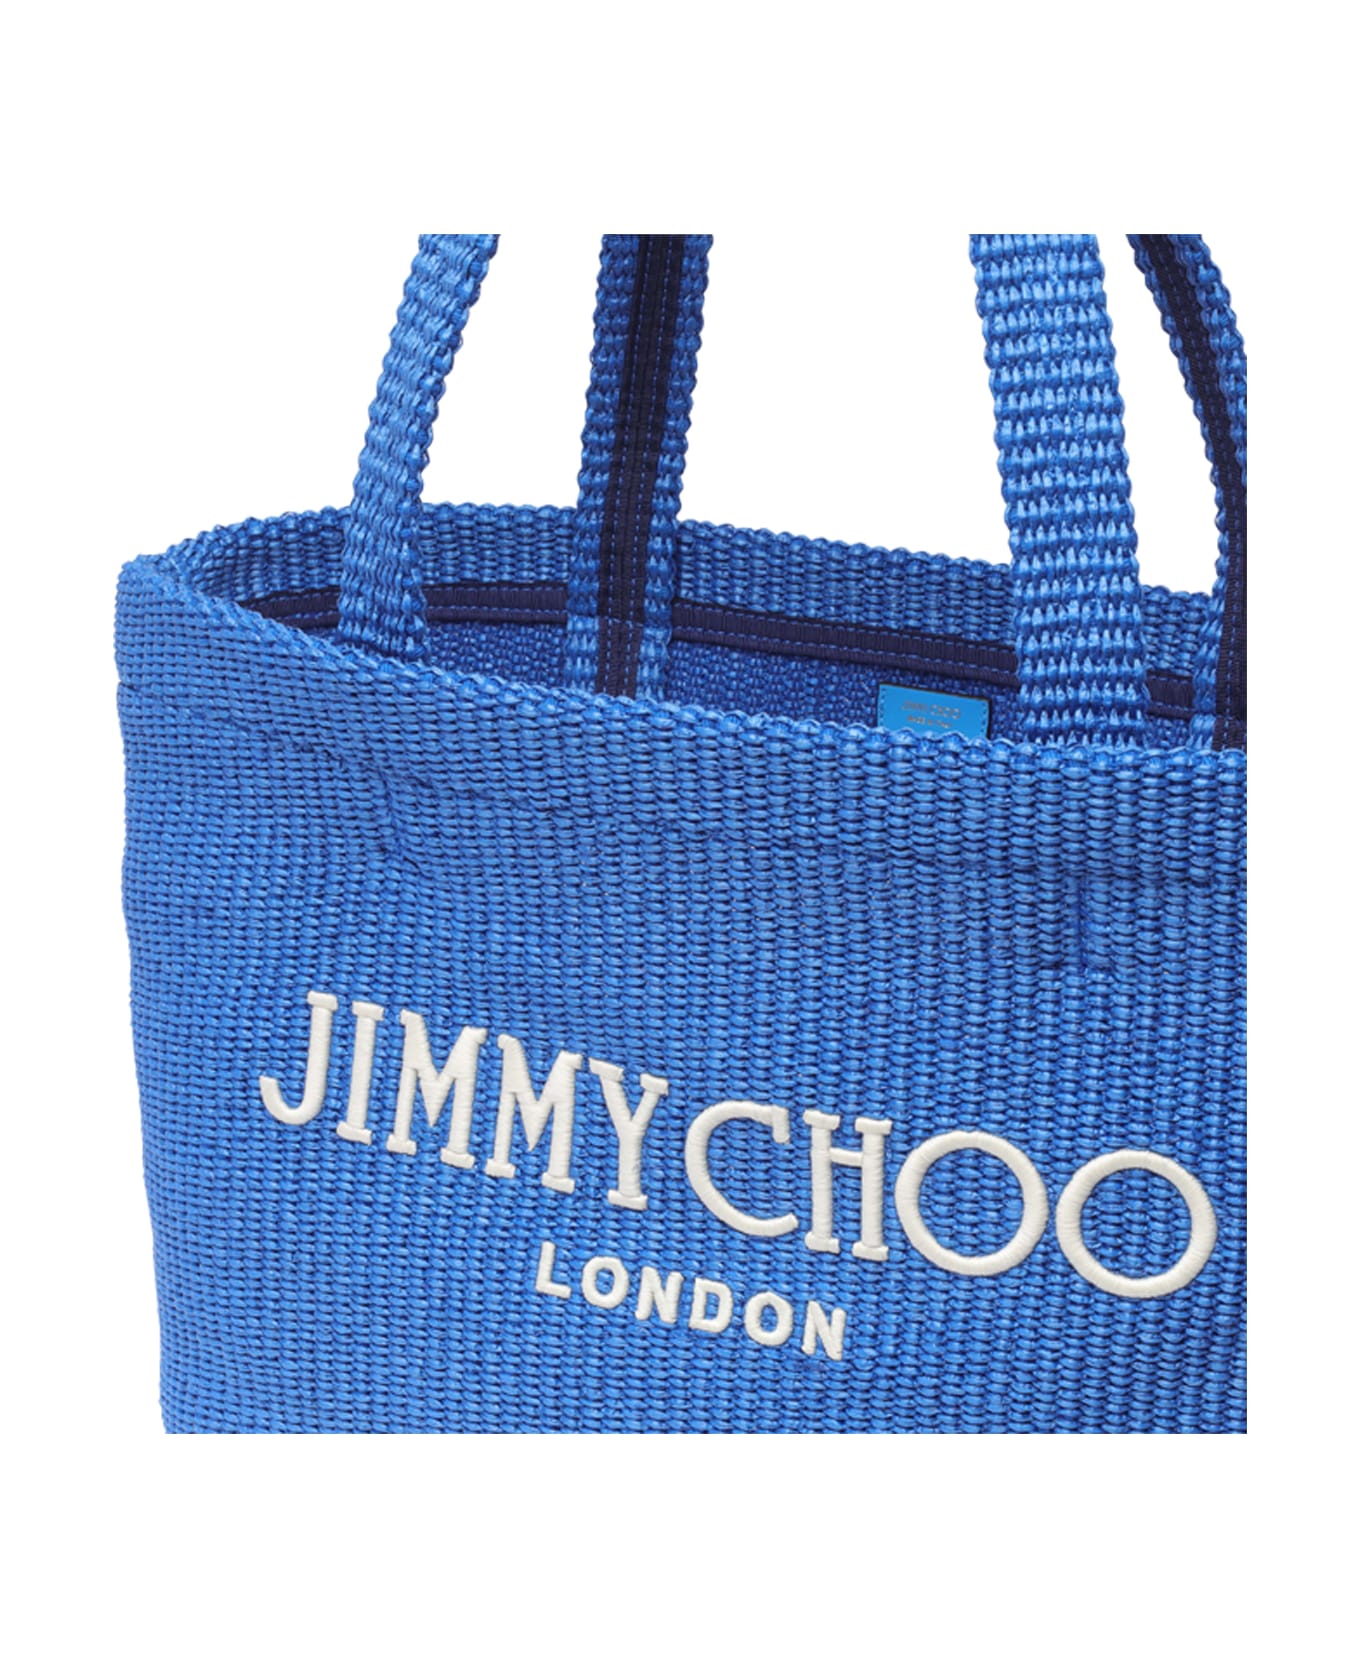 Jimmy Choo E/w Beach Tote - Blue